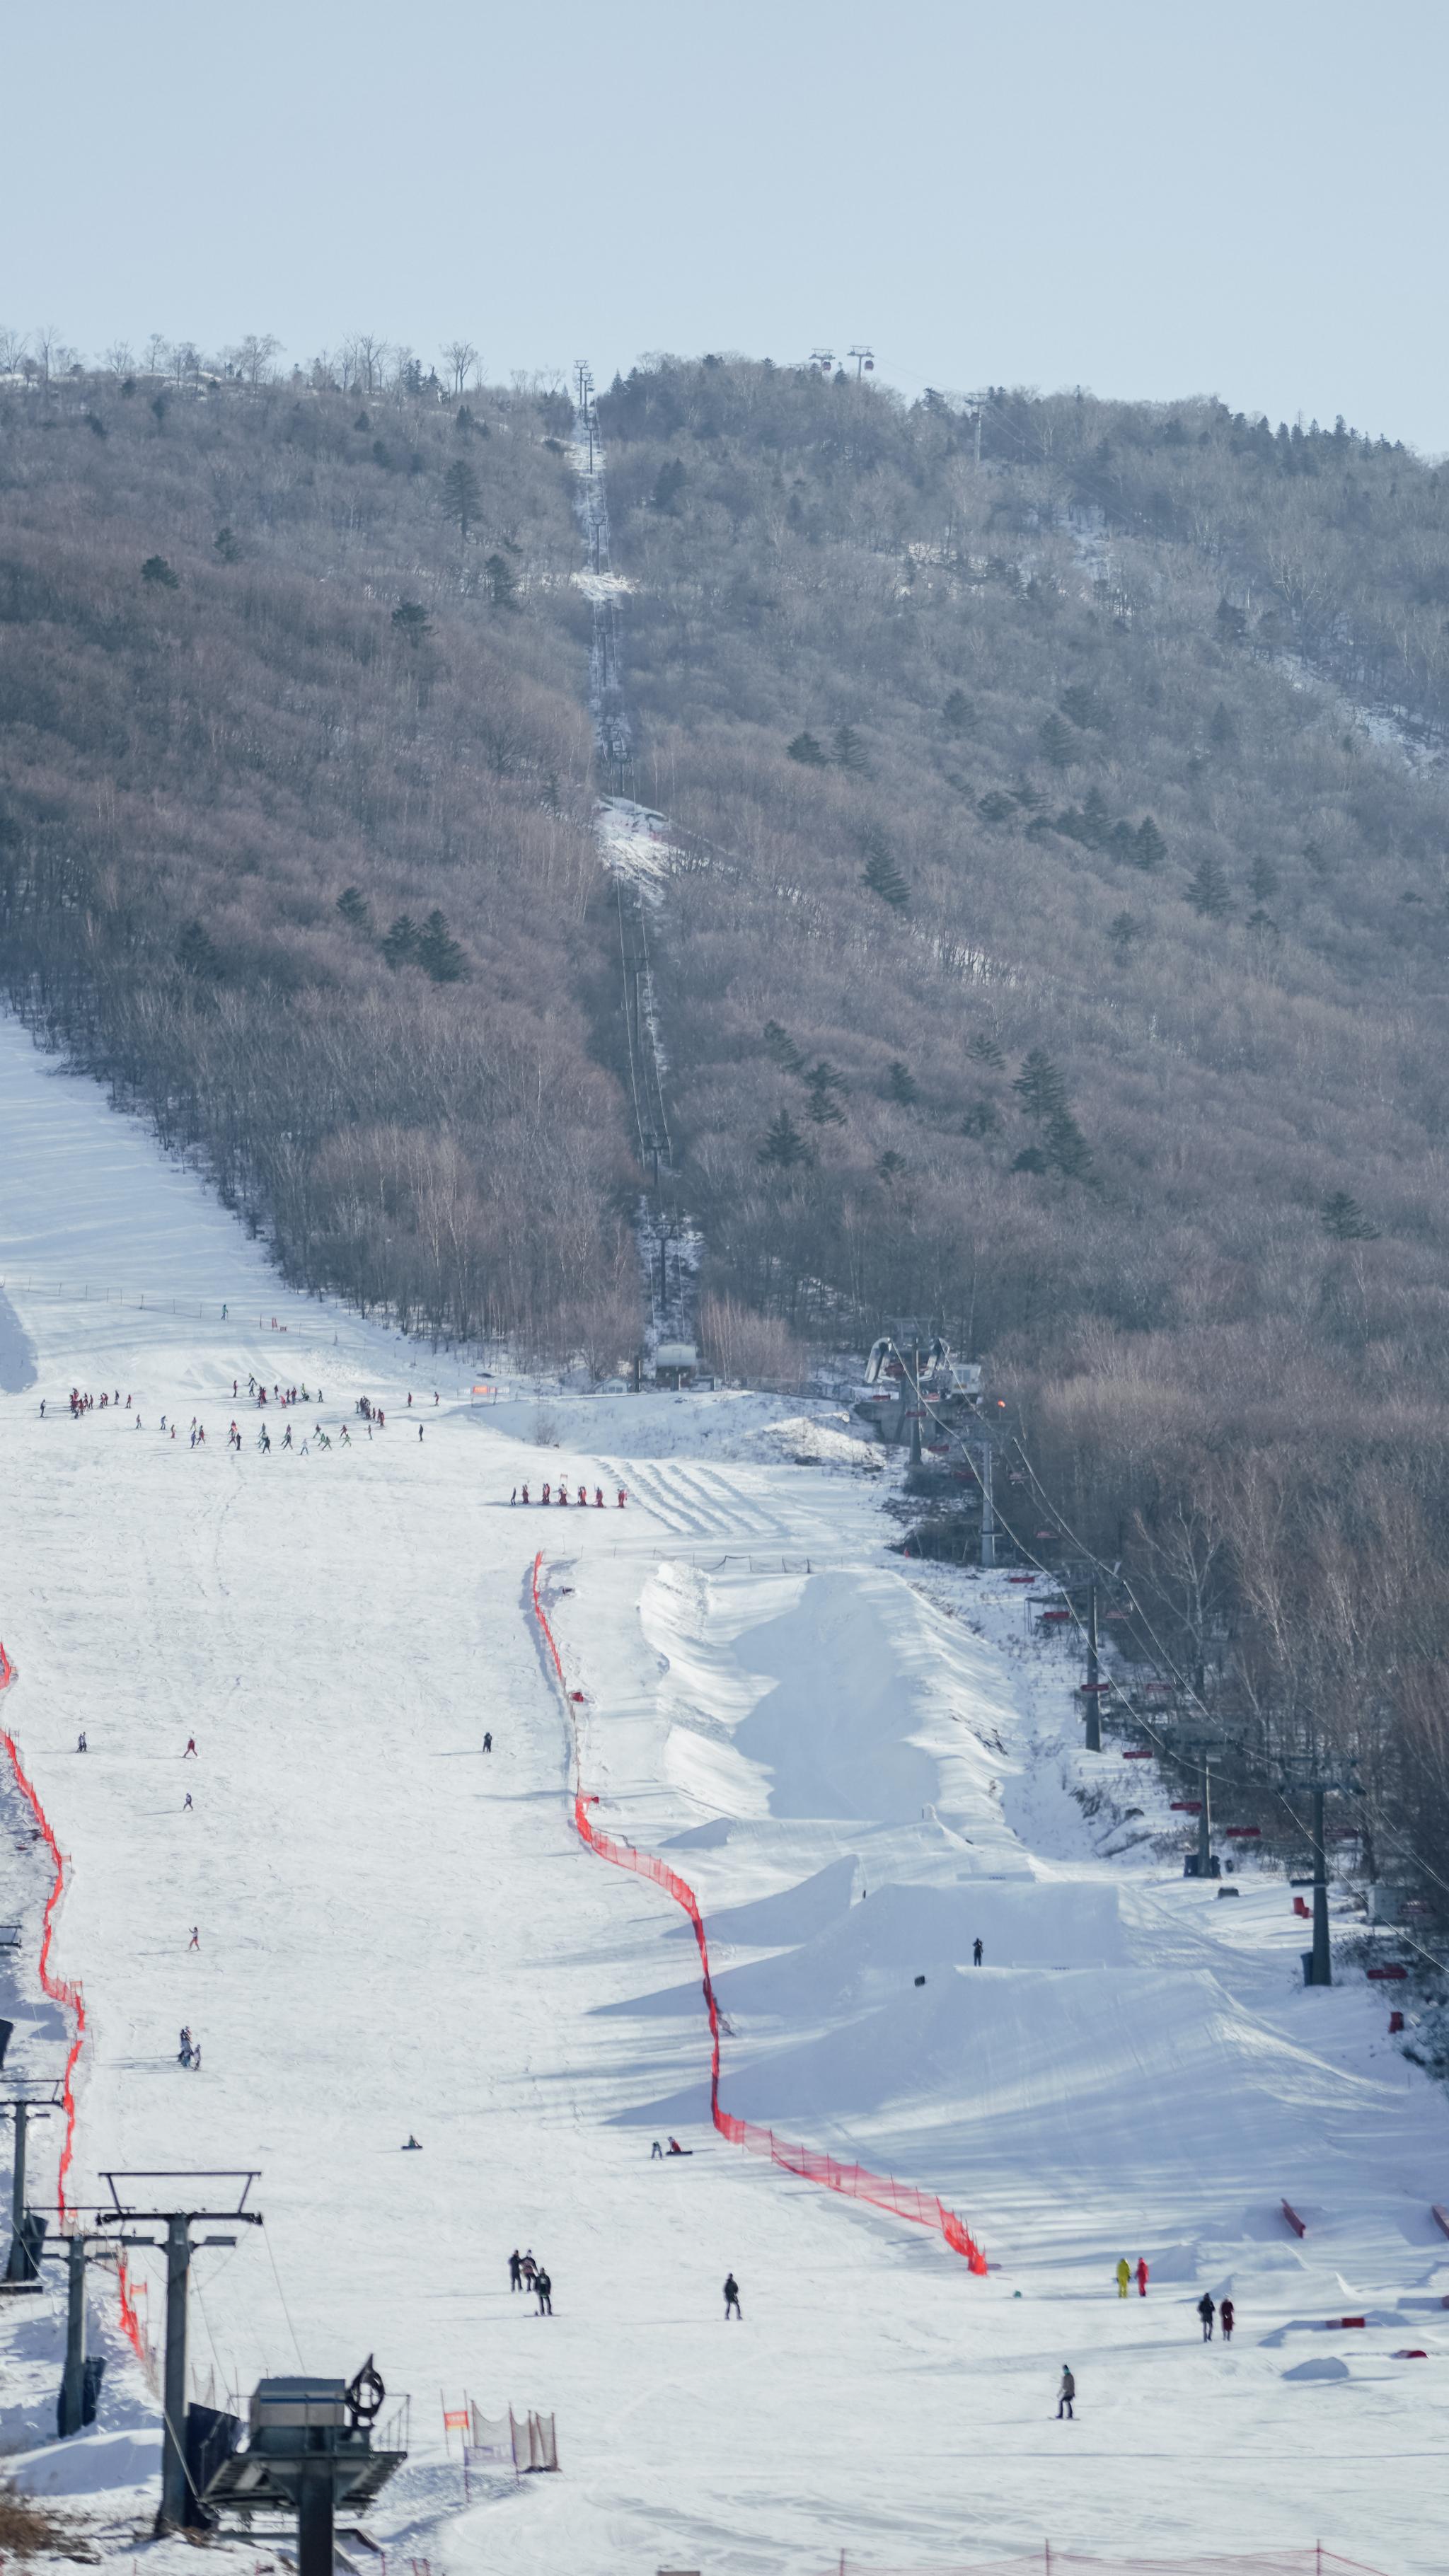 北大壶滑雪场初级雪道图片